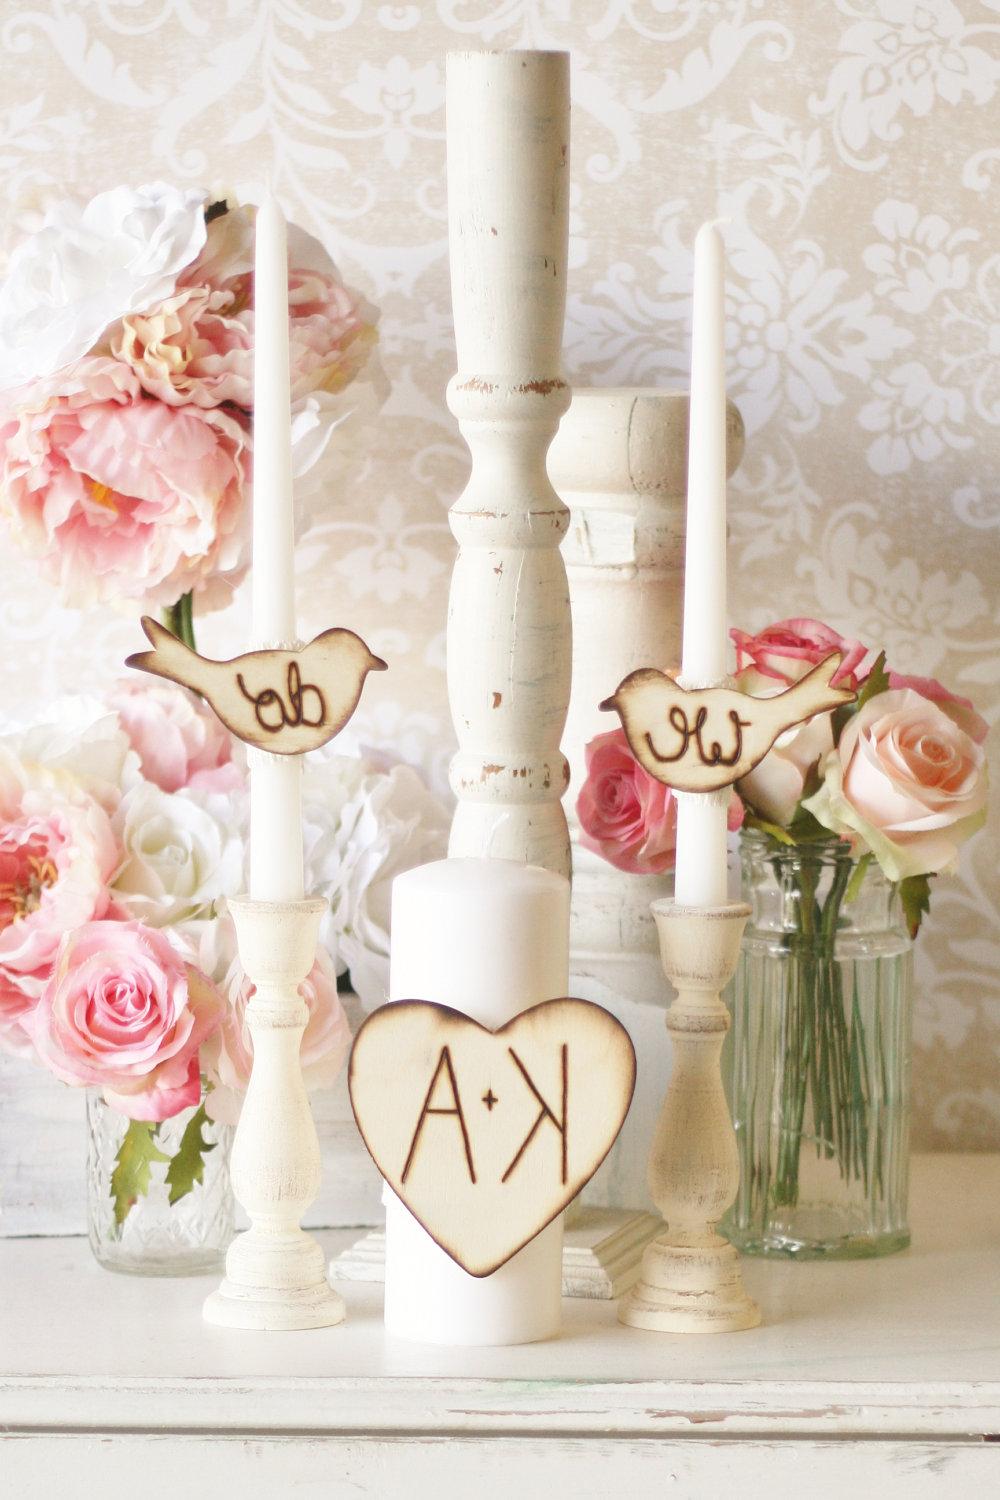 Wood Heart Rustic Chic Wedding Decor By Morgann Hill Designs